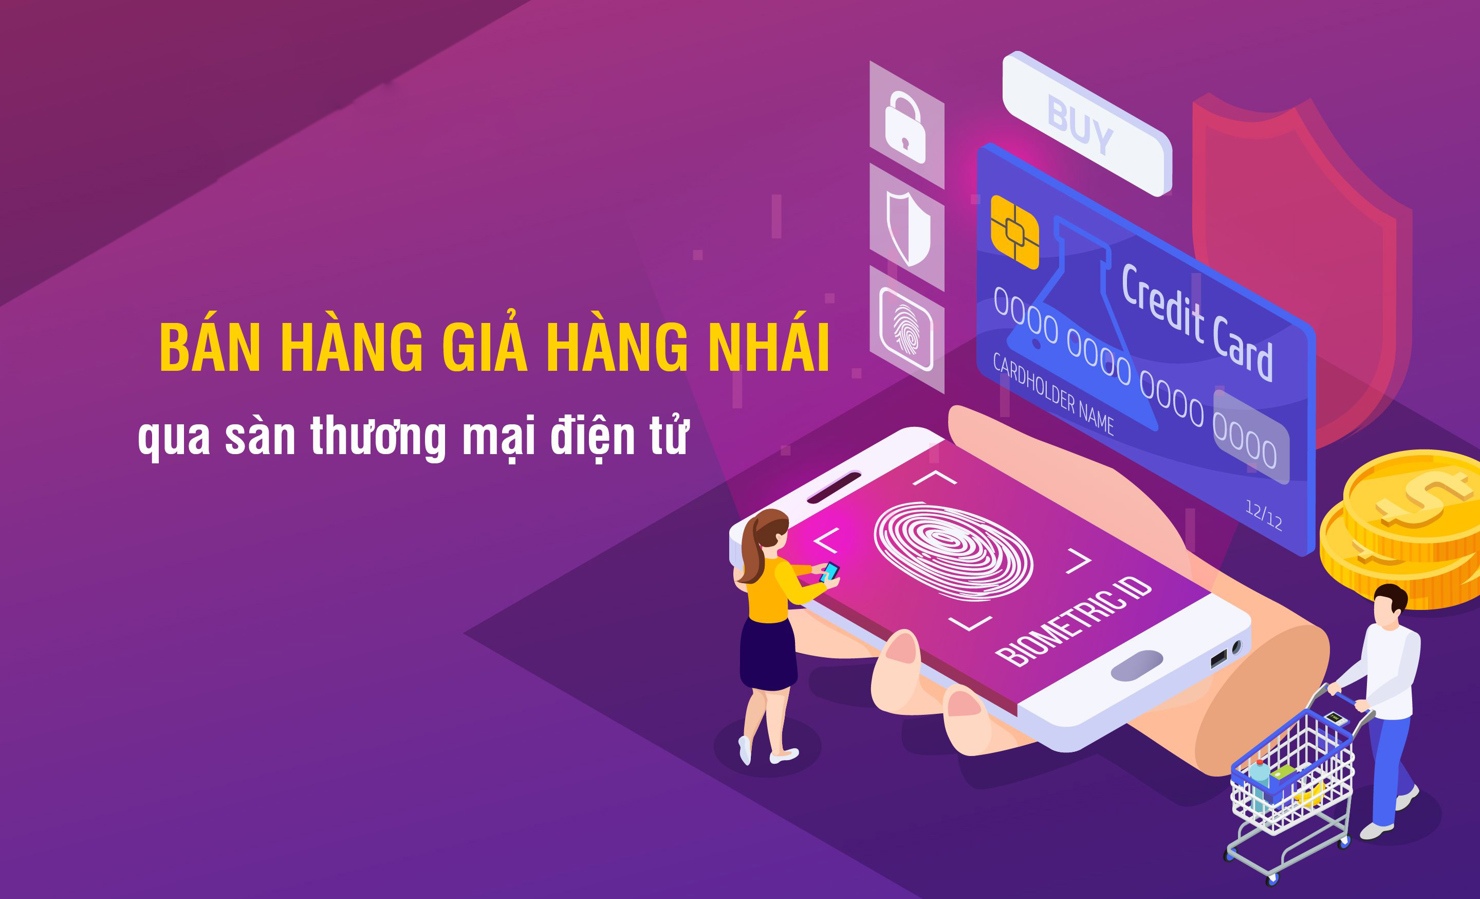 Lừa đảo rao bán hàng giả, hàng nhái qua sàn thương mại điện tử rất phổ biến trên không gian mạng Việt Nam.